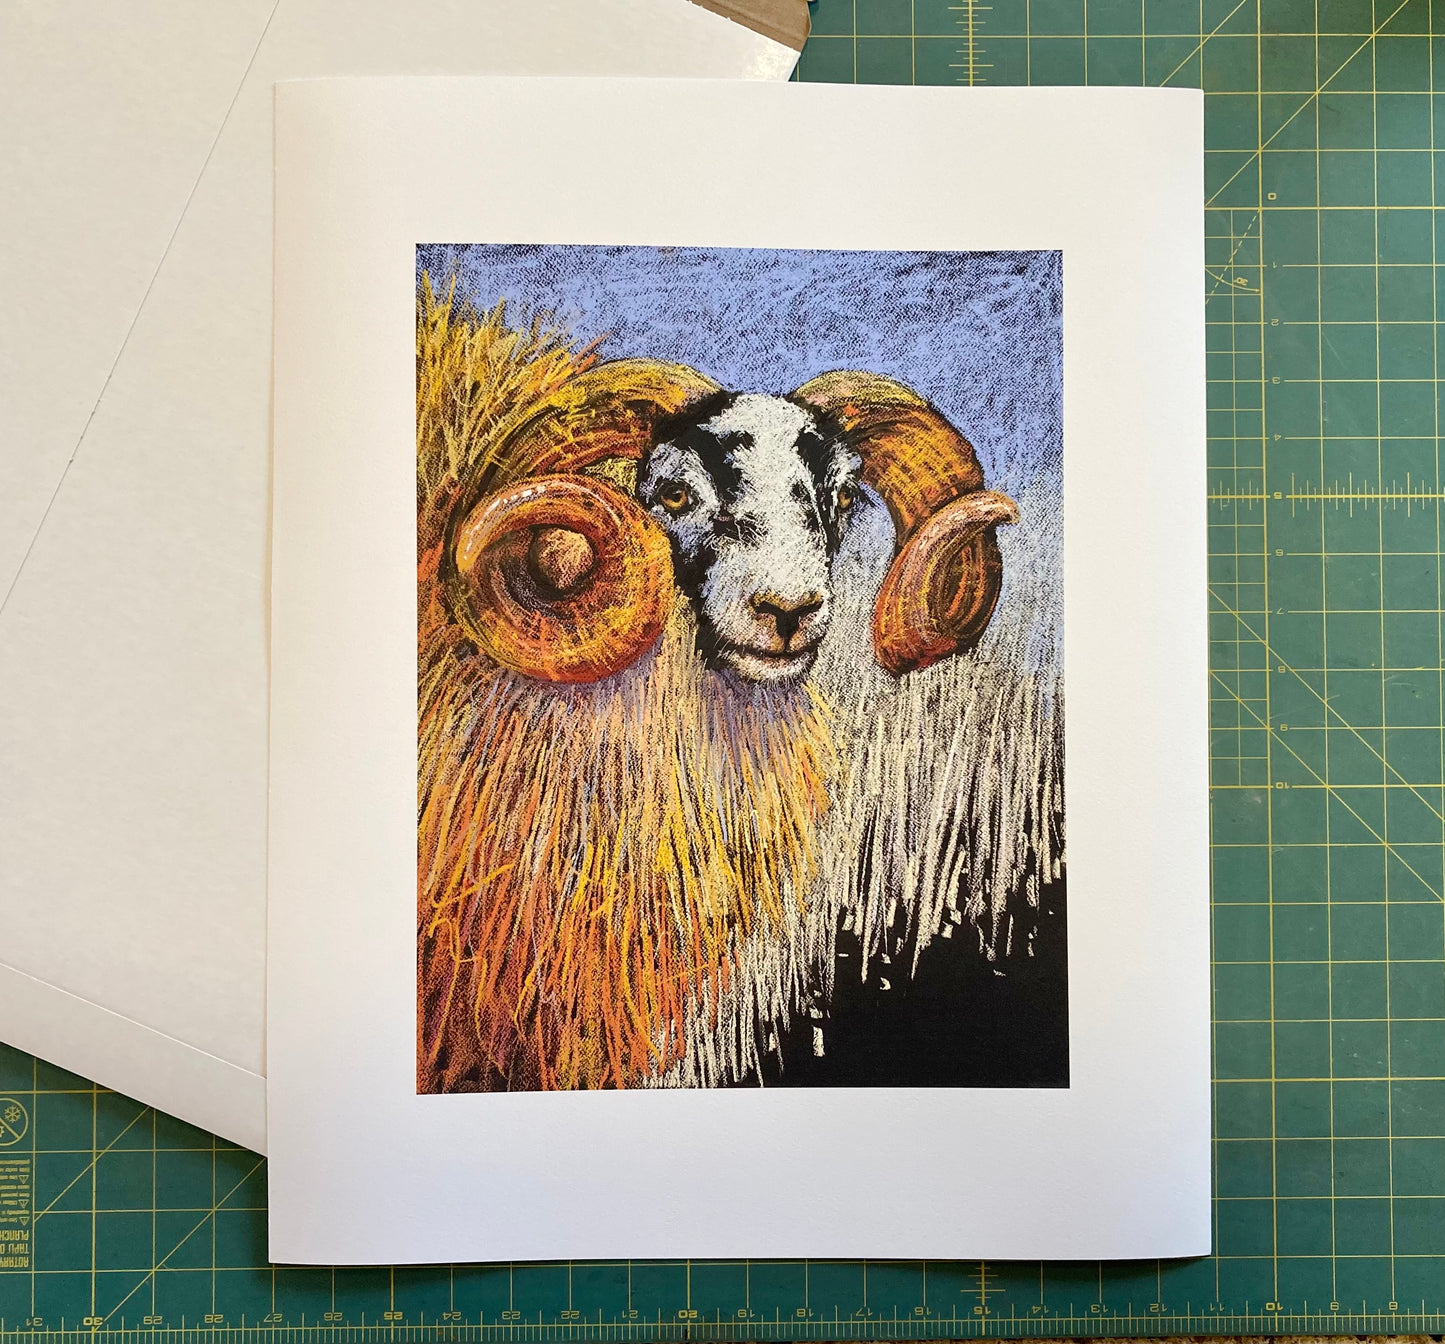 Sheep print on cutting board